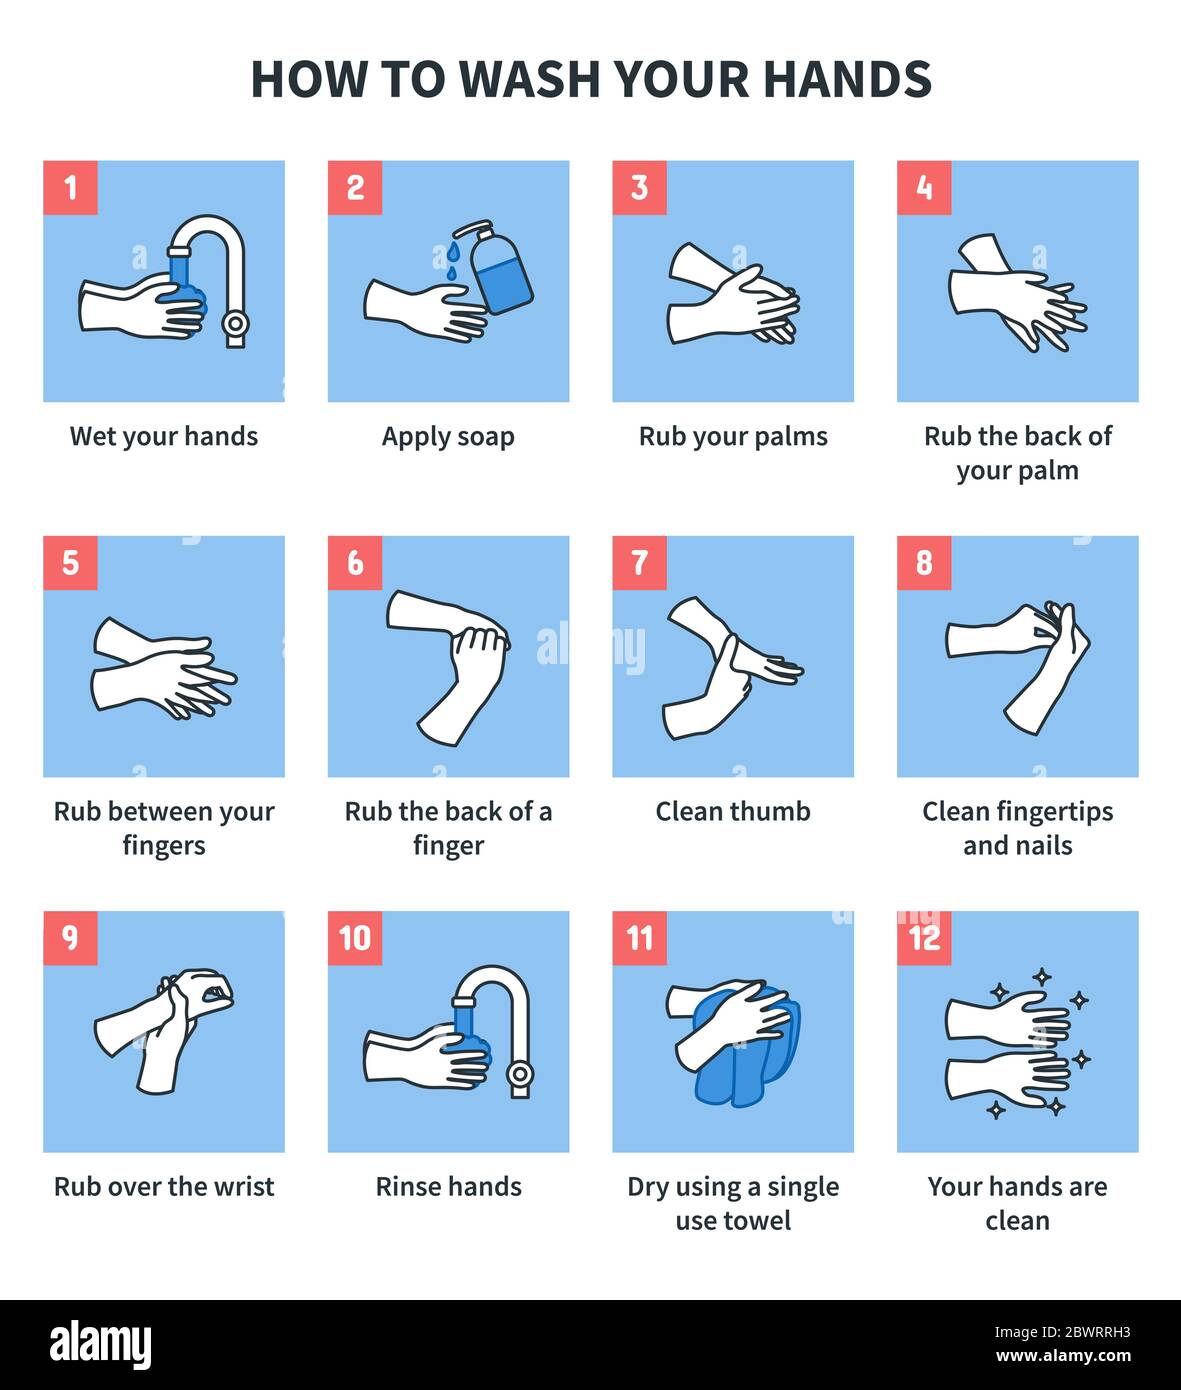 Illustrazione infografica di come lavare le mani con acqua e sapone per almeno 20 secondi. Come lavare le mani correttamente per prevenire il virus. Illustrazione Vettoriale